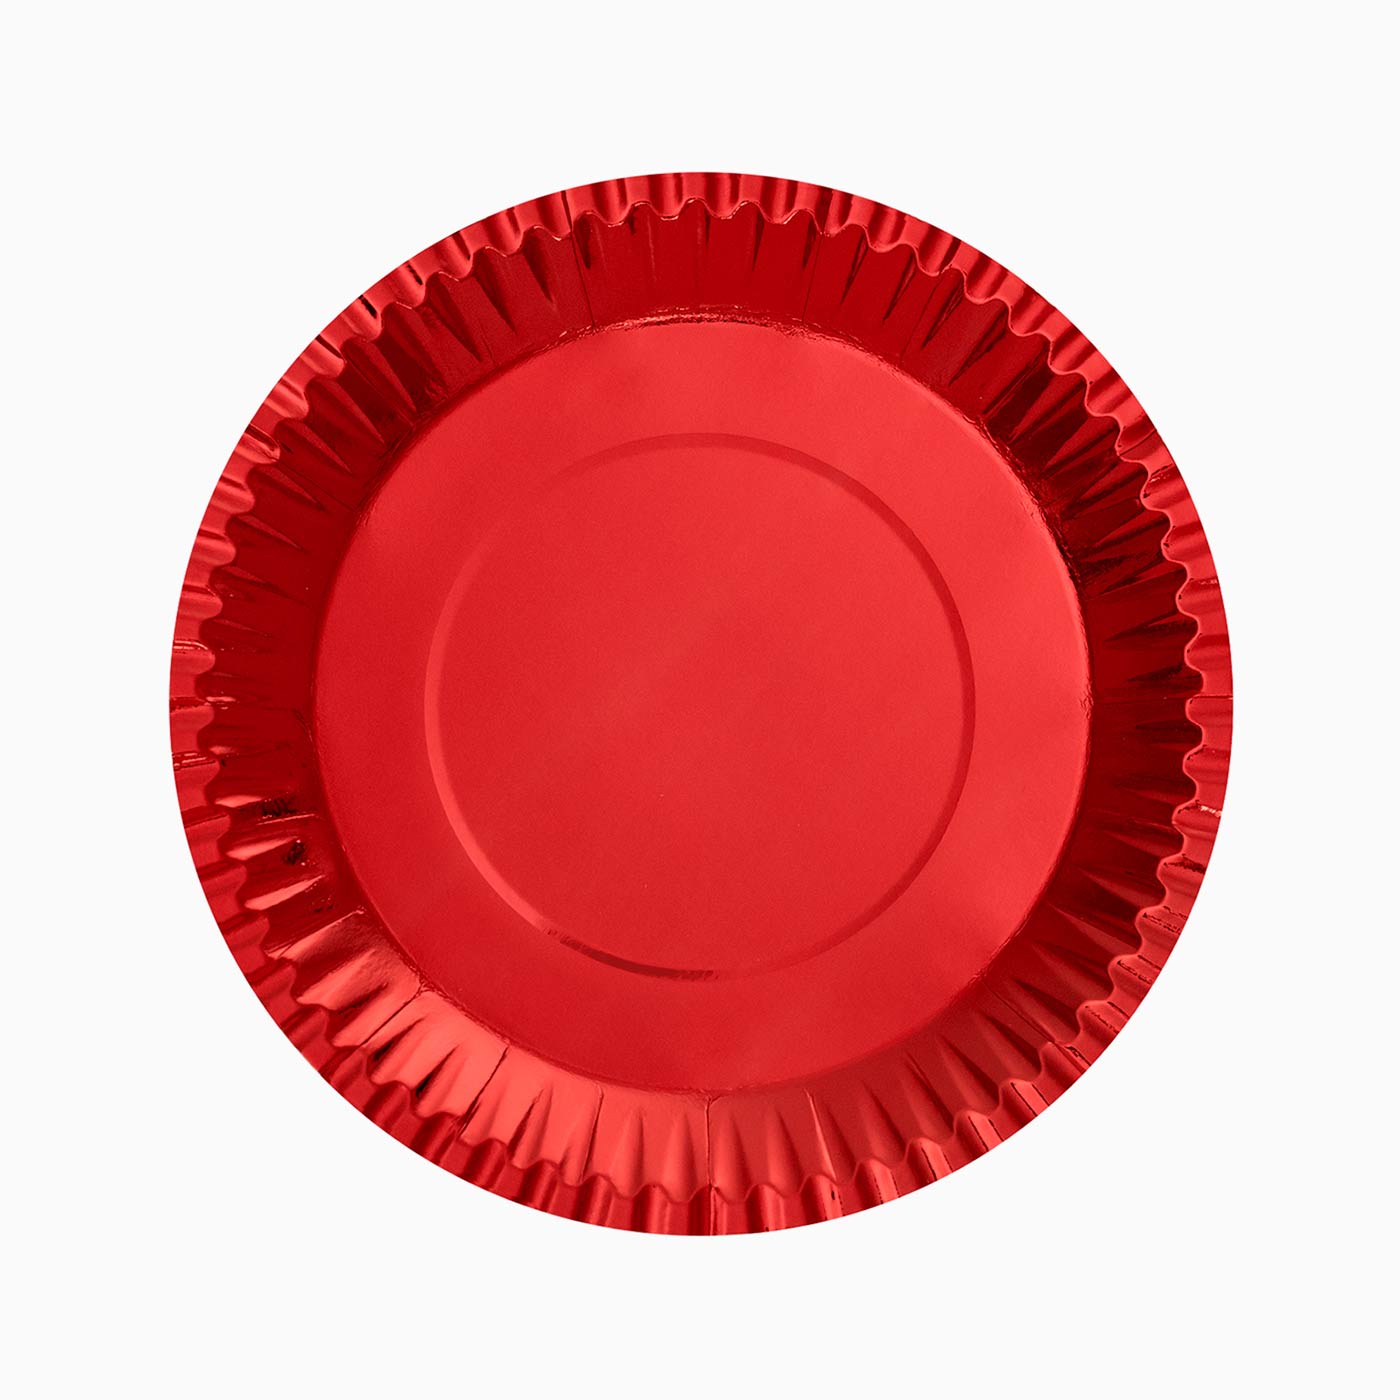 Cartone piatto metallizzato Ø 28 cm rosso